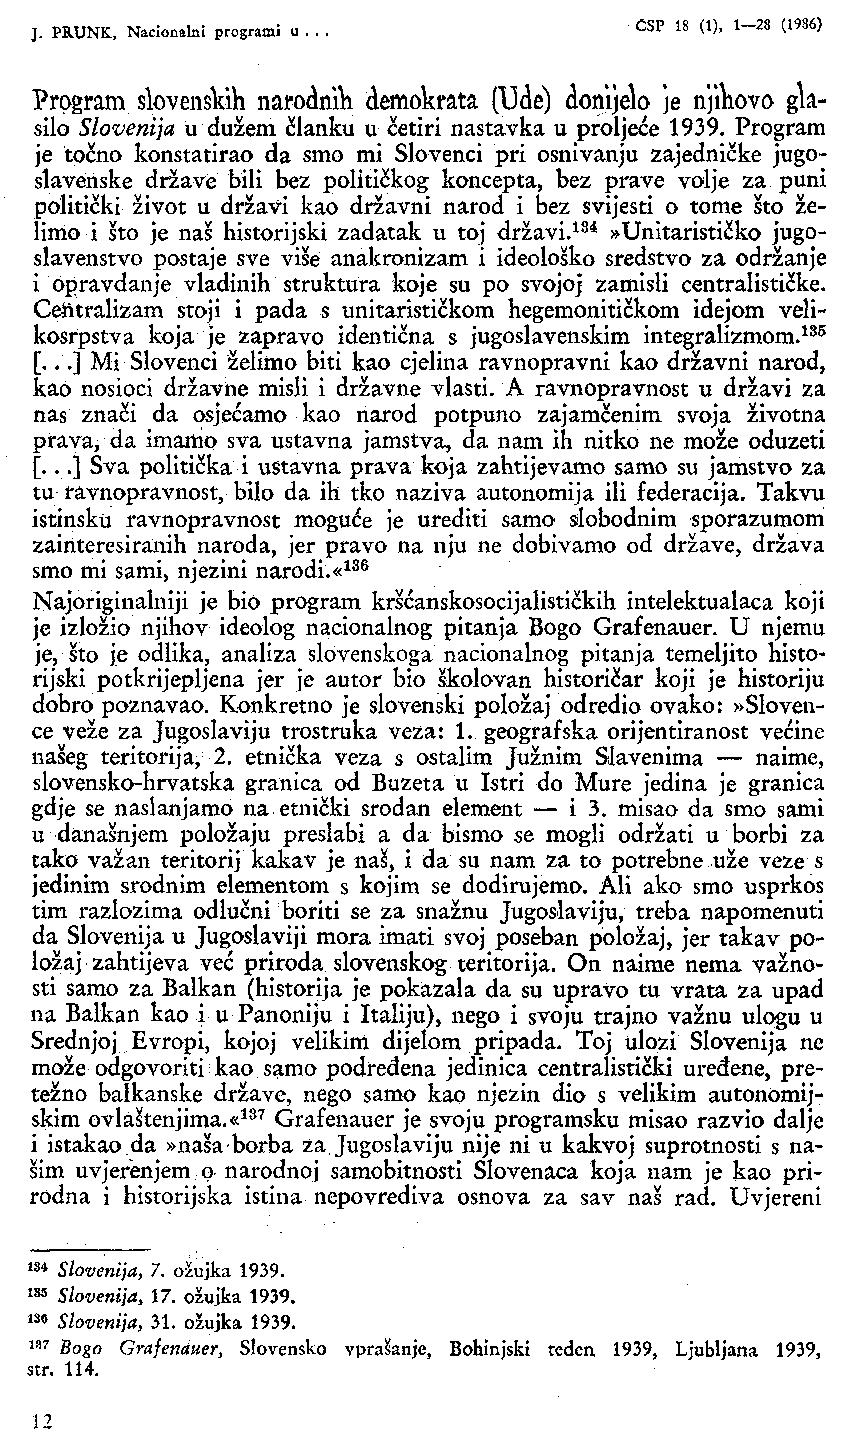 J. PRUNK. Nacionalni programi u... CSP 18 (1), 1-28 (1986) Program slovenskithi narocinili demokrata (Ude) donijelo je njikovo silo Slovenija u dužem članku u četiri nastavka u proljeće 1939.